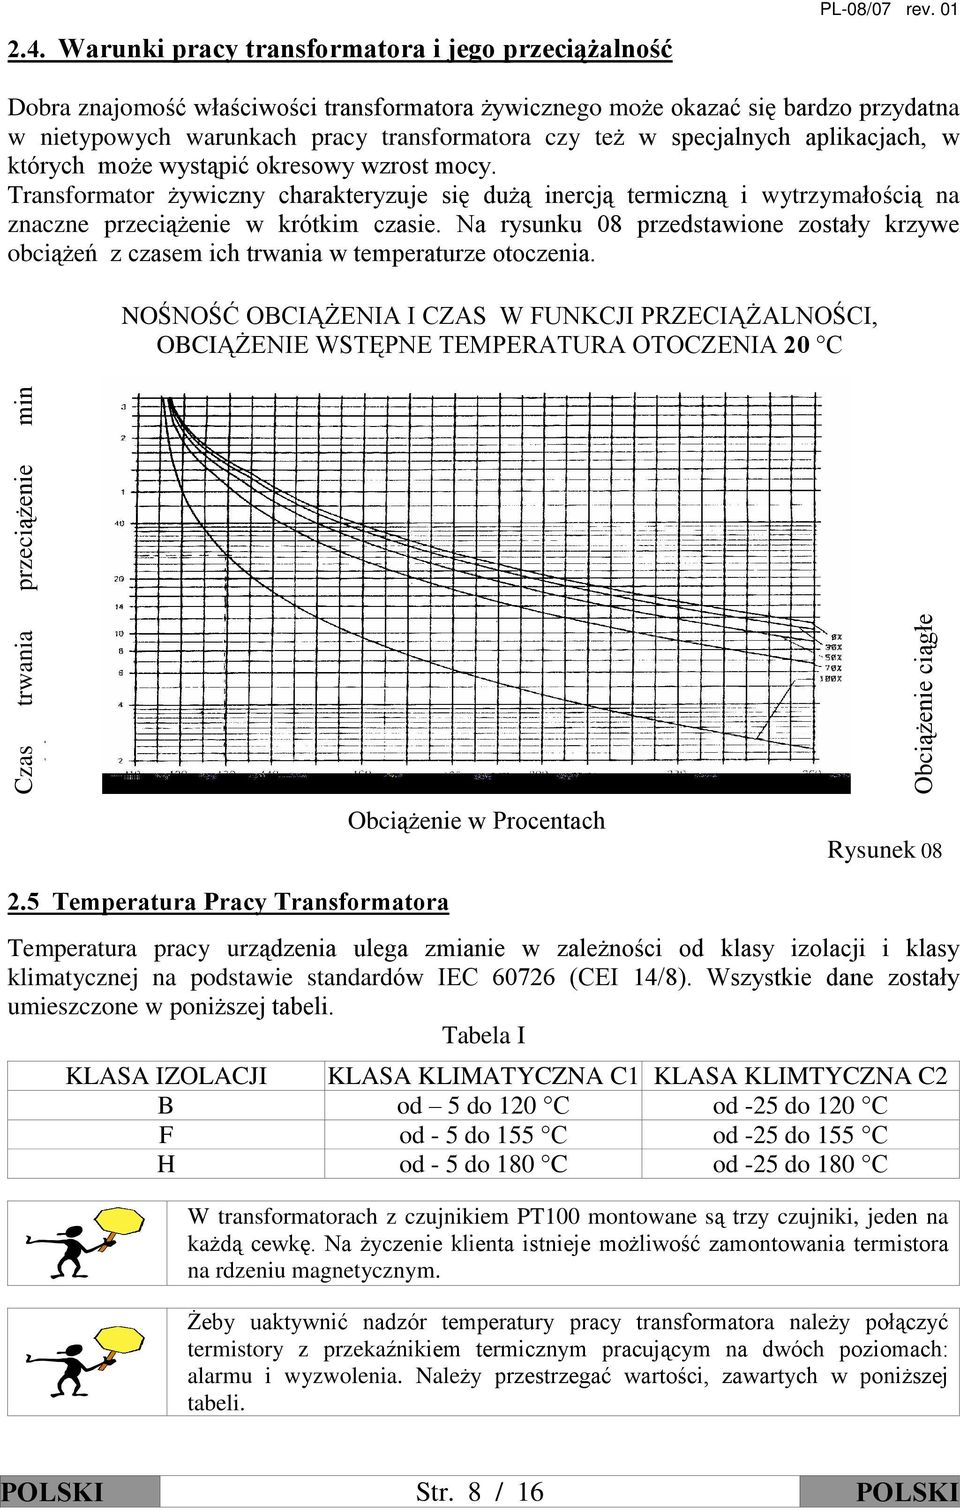 okresowy wzrost mocy. Transformator ywiczny charakteryzuje siê du ¹ inercj¹ termiczn¹ i wytrzymaùoœci¹ na znaczne przeci¹ enie w krótkim czasie.